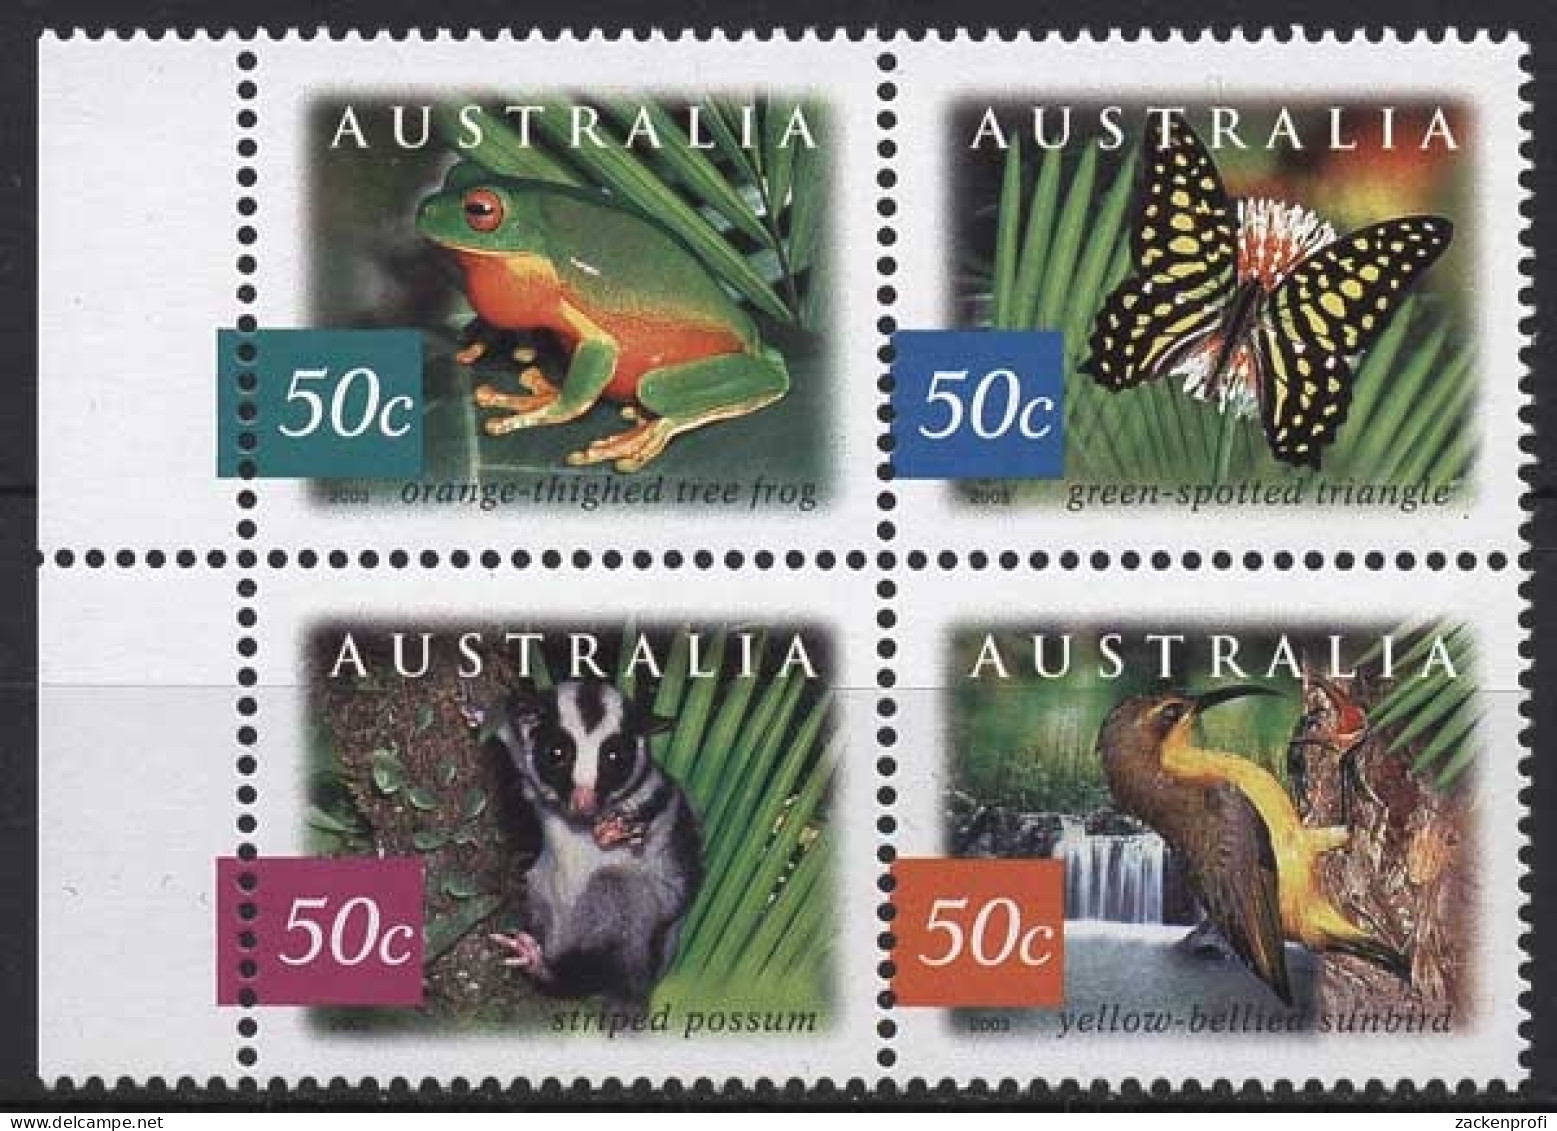 Australien 2003 Regenwald Tiere Frosch Schmetterling 2237/40 ZD Postfrisch - Ungebraucht